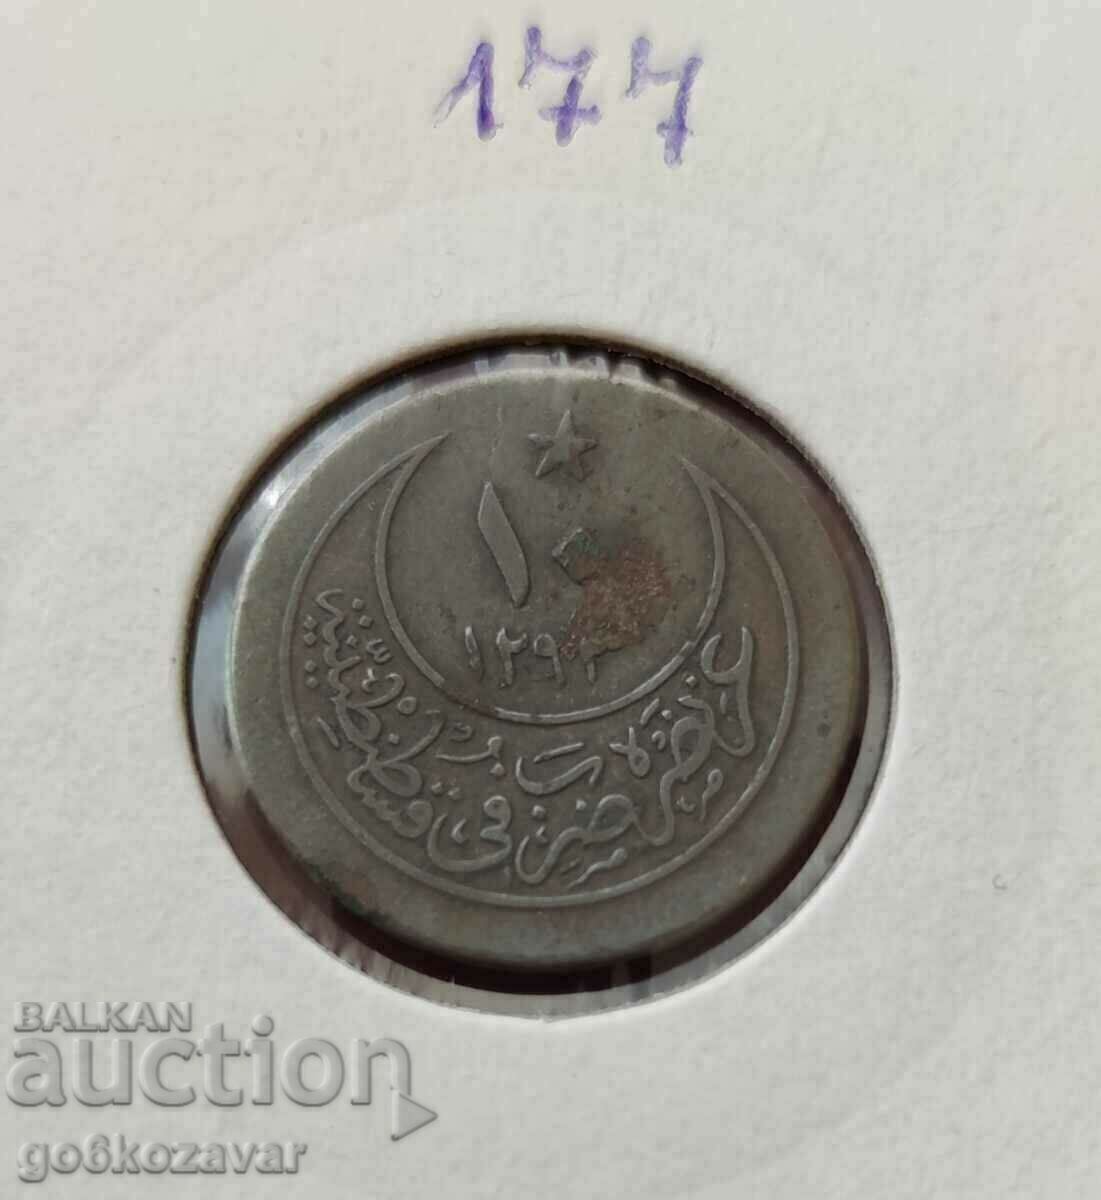 Οθωμανική Αυτοκρατορία 10 νομίσματα 1293-1876 Ασημένιος αριθμός 27